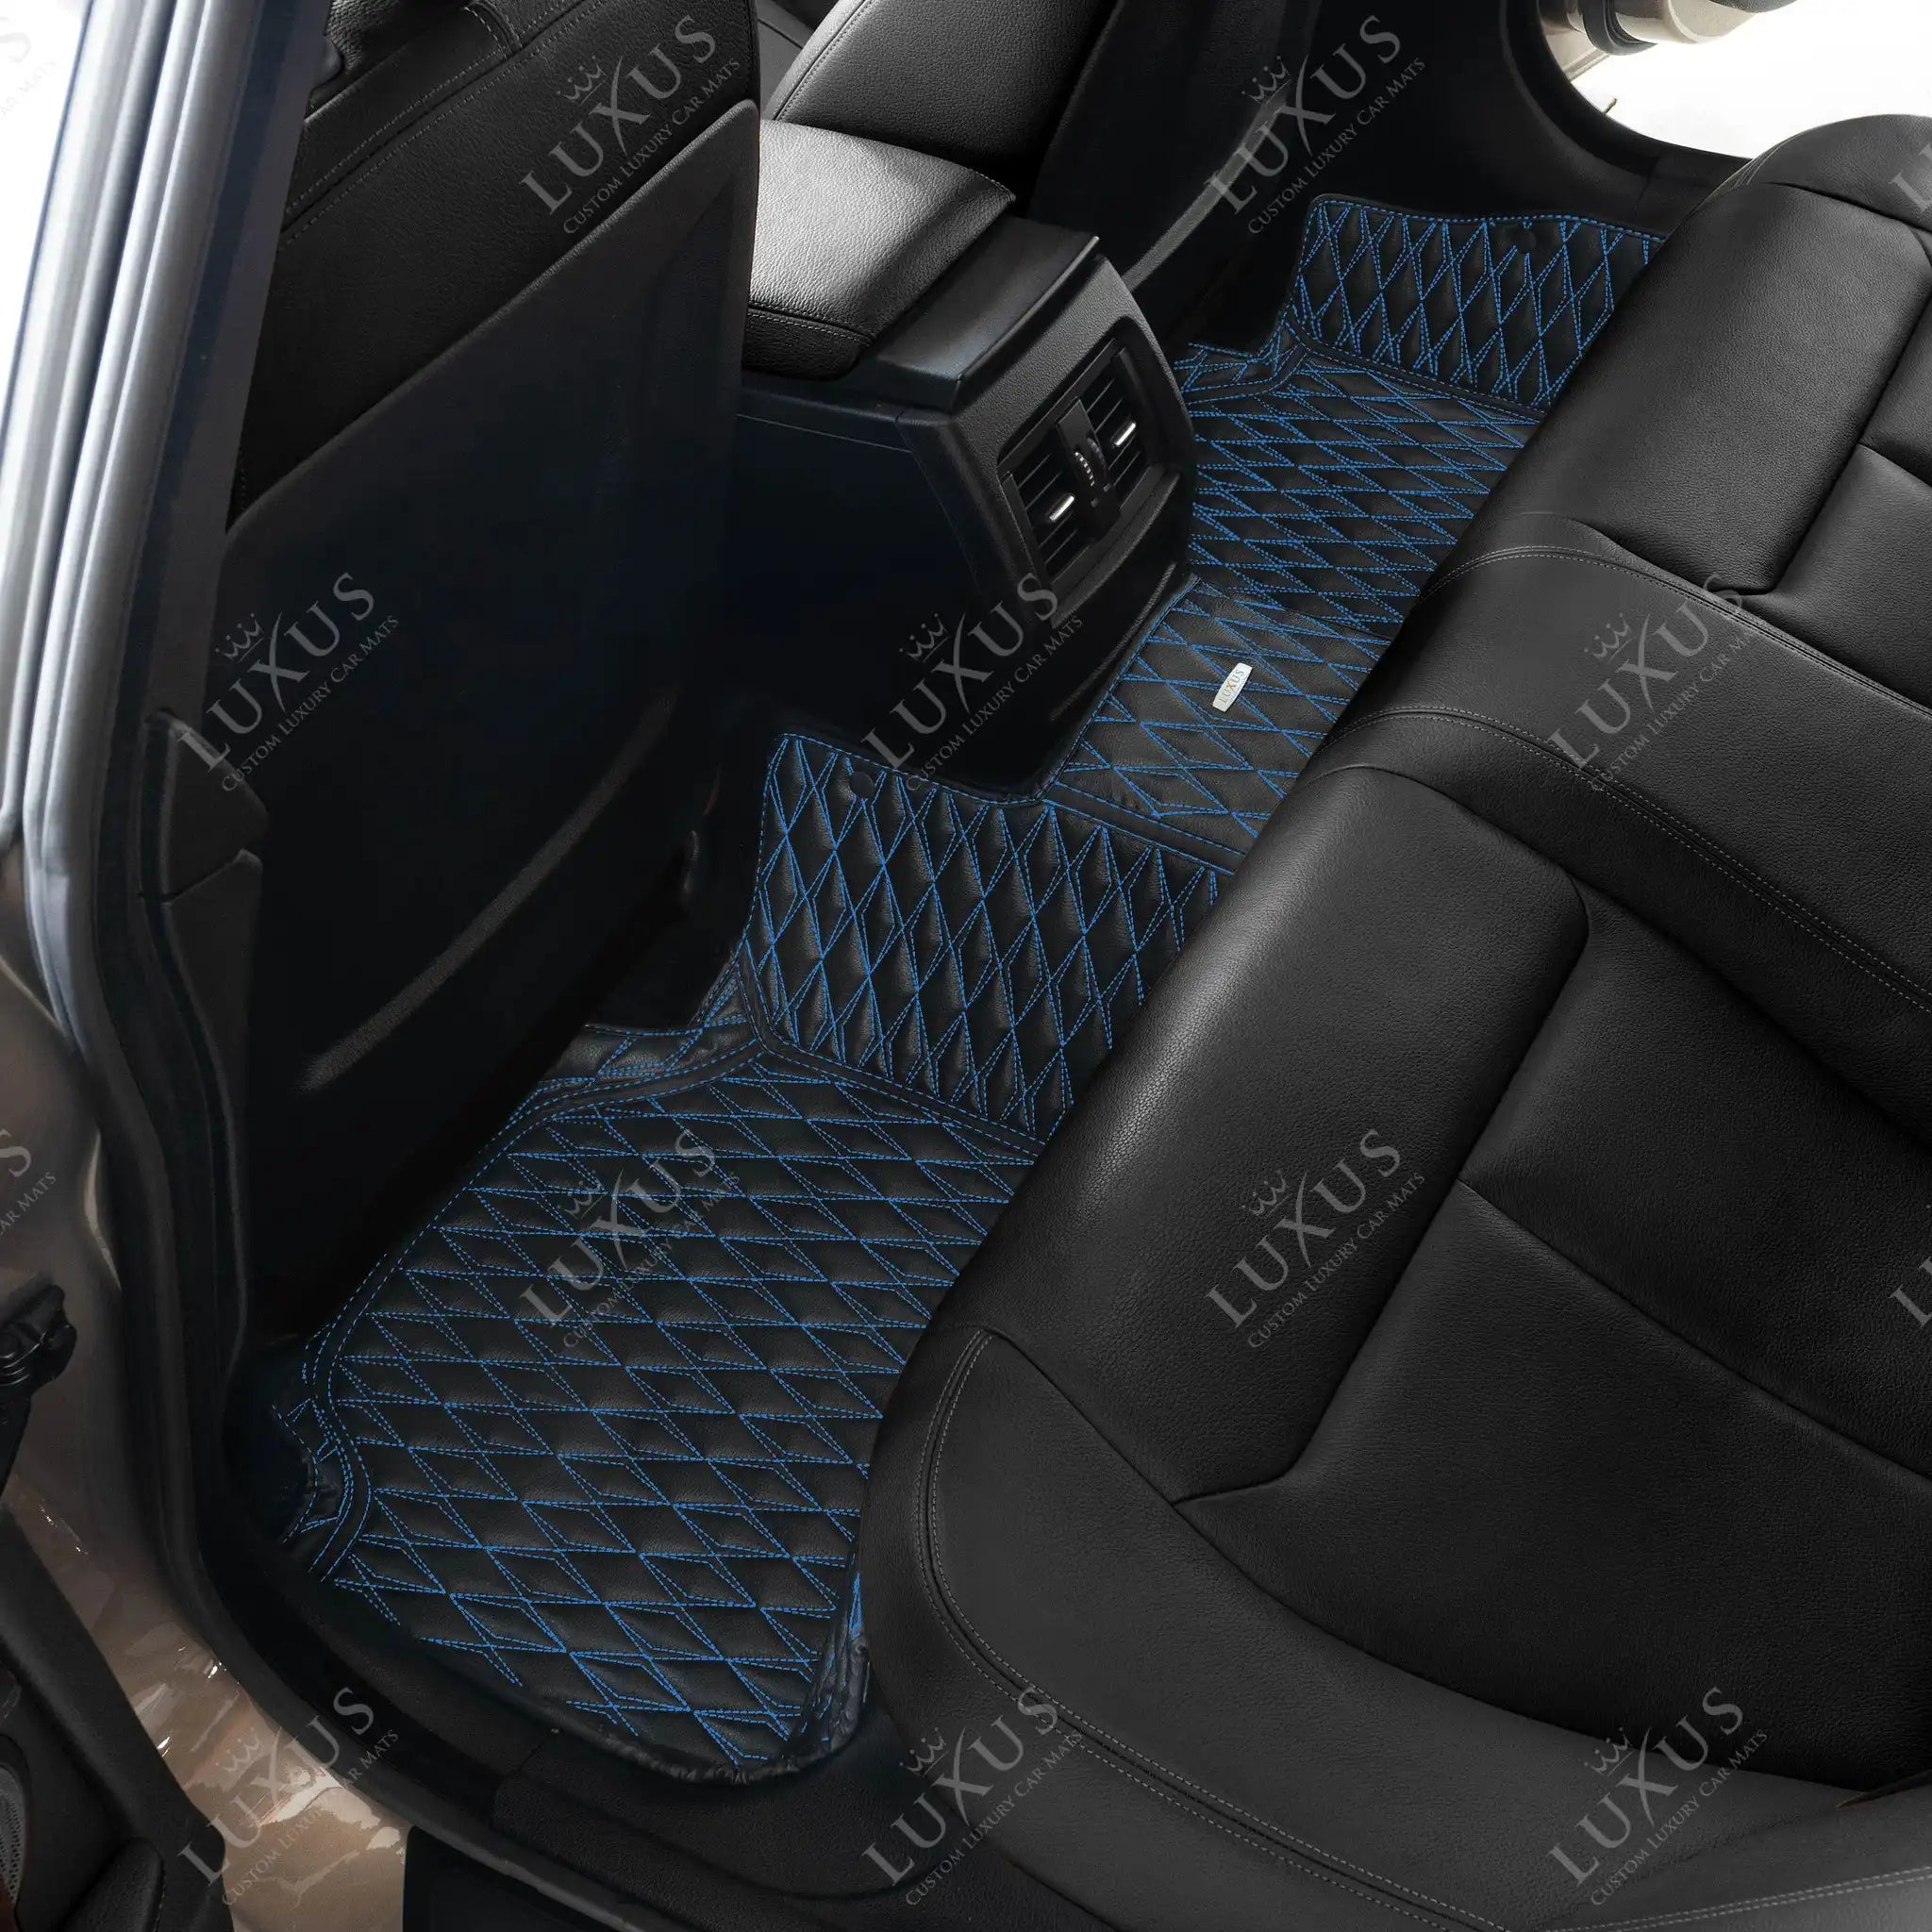 Twin-Diamond Black & Blue Stitching Luxury Car Mats Set